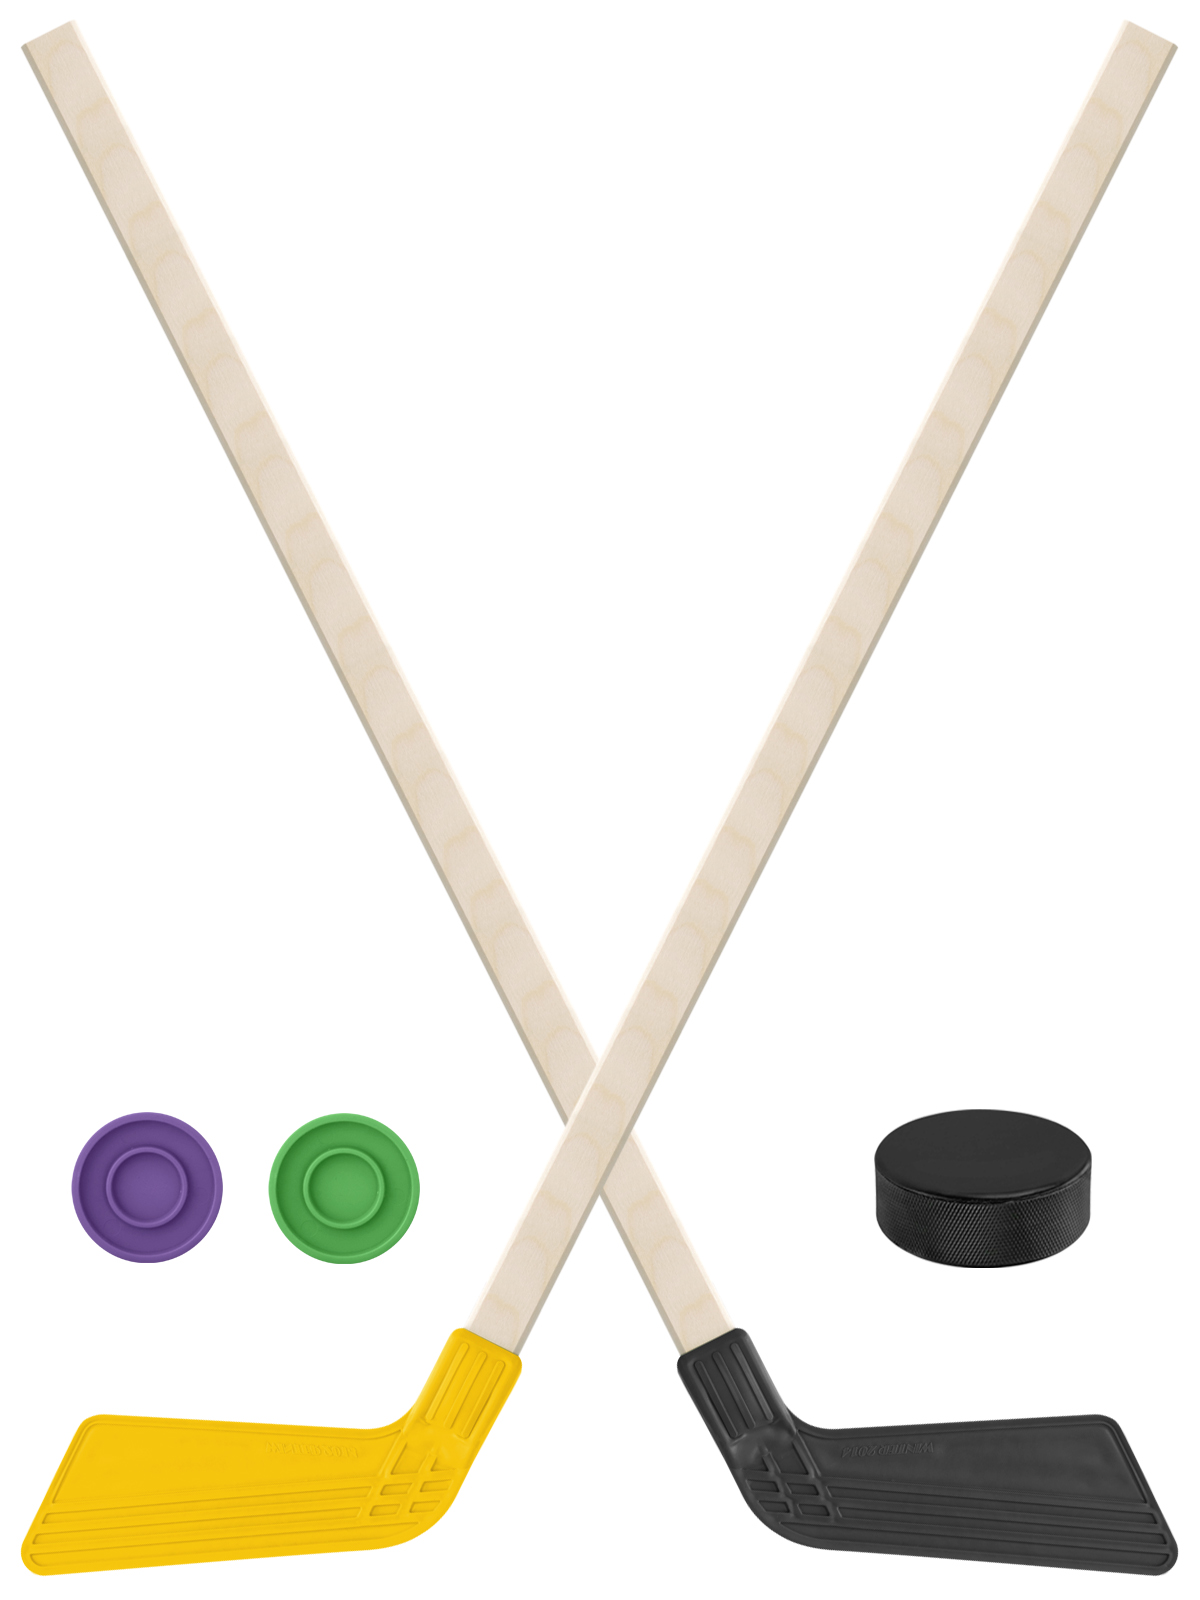 Детский хоккейный набор Задира-плюс Клюшка хоккейная 80см 2шт(жёлт,чёрн)+2шайбы+Шайба75 мм клюшка флорбольная acito medi 35 yellow 85 round прямой